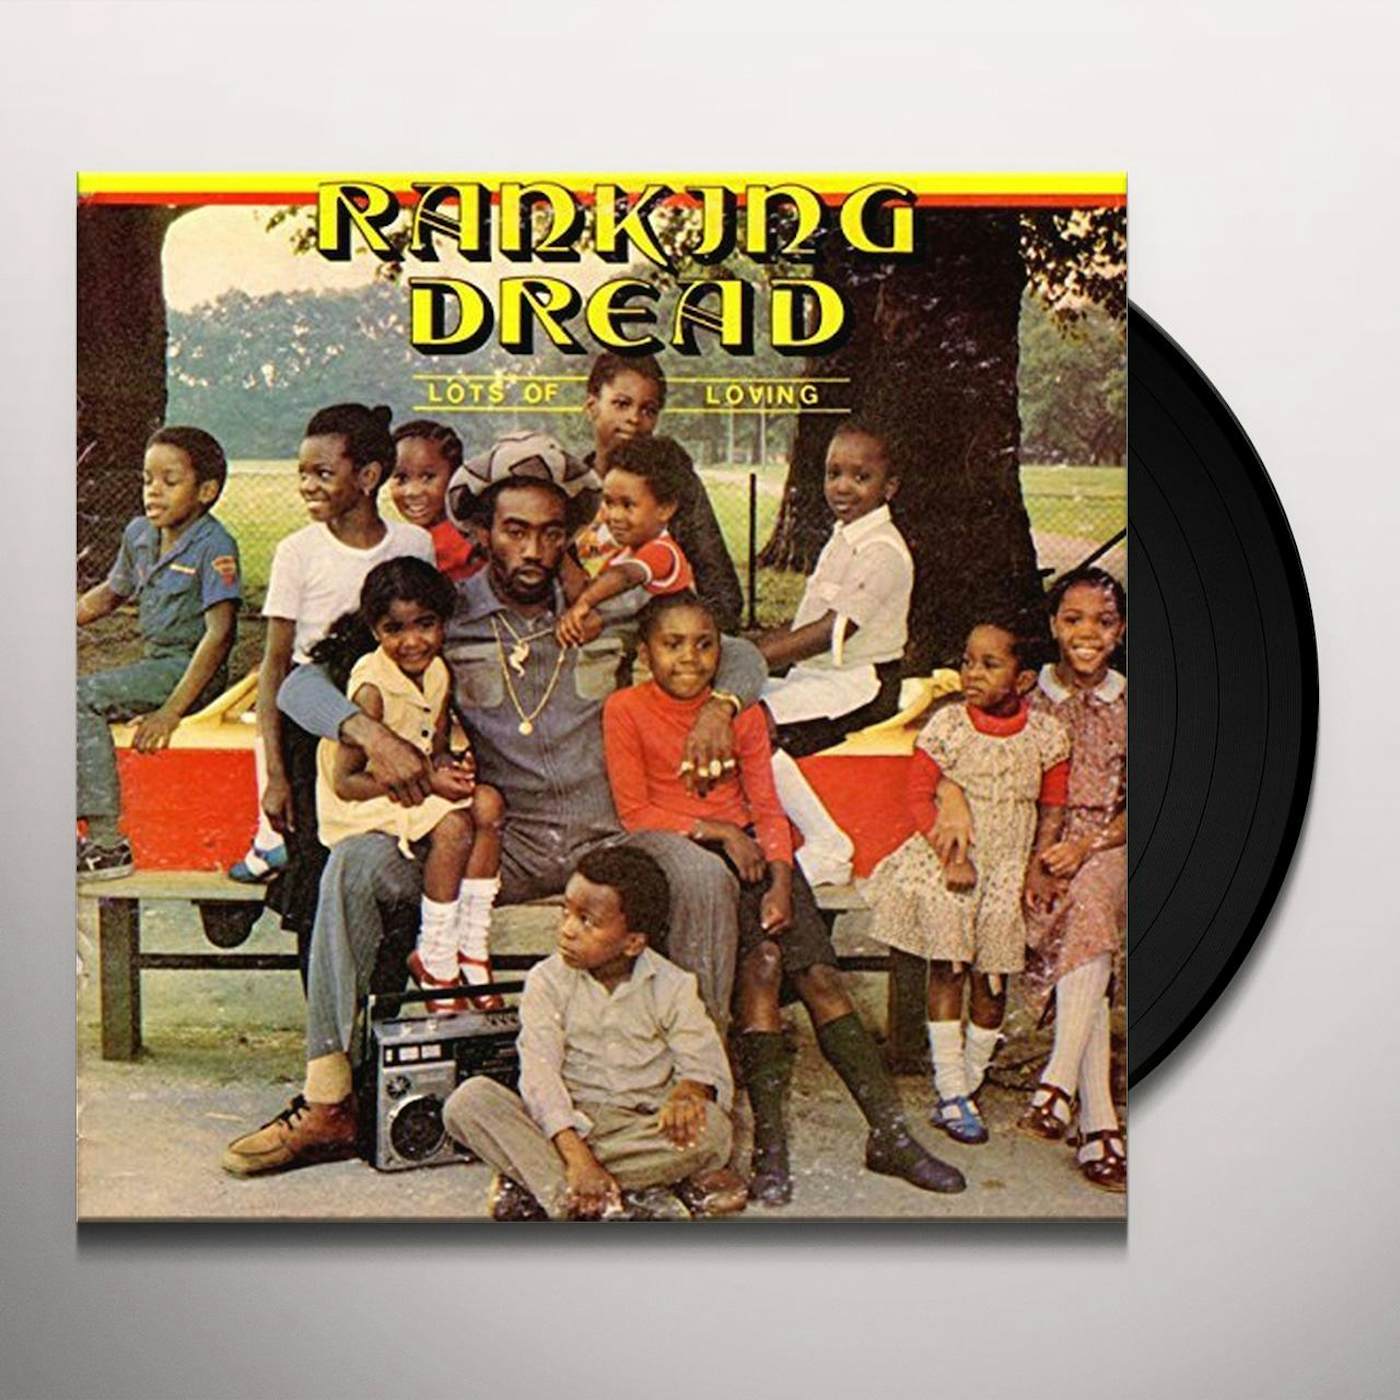 Ranking Dread Lots Of Loving Vinyl Record